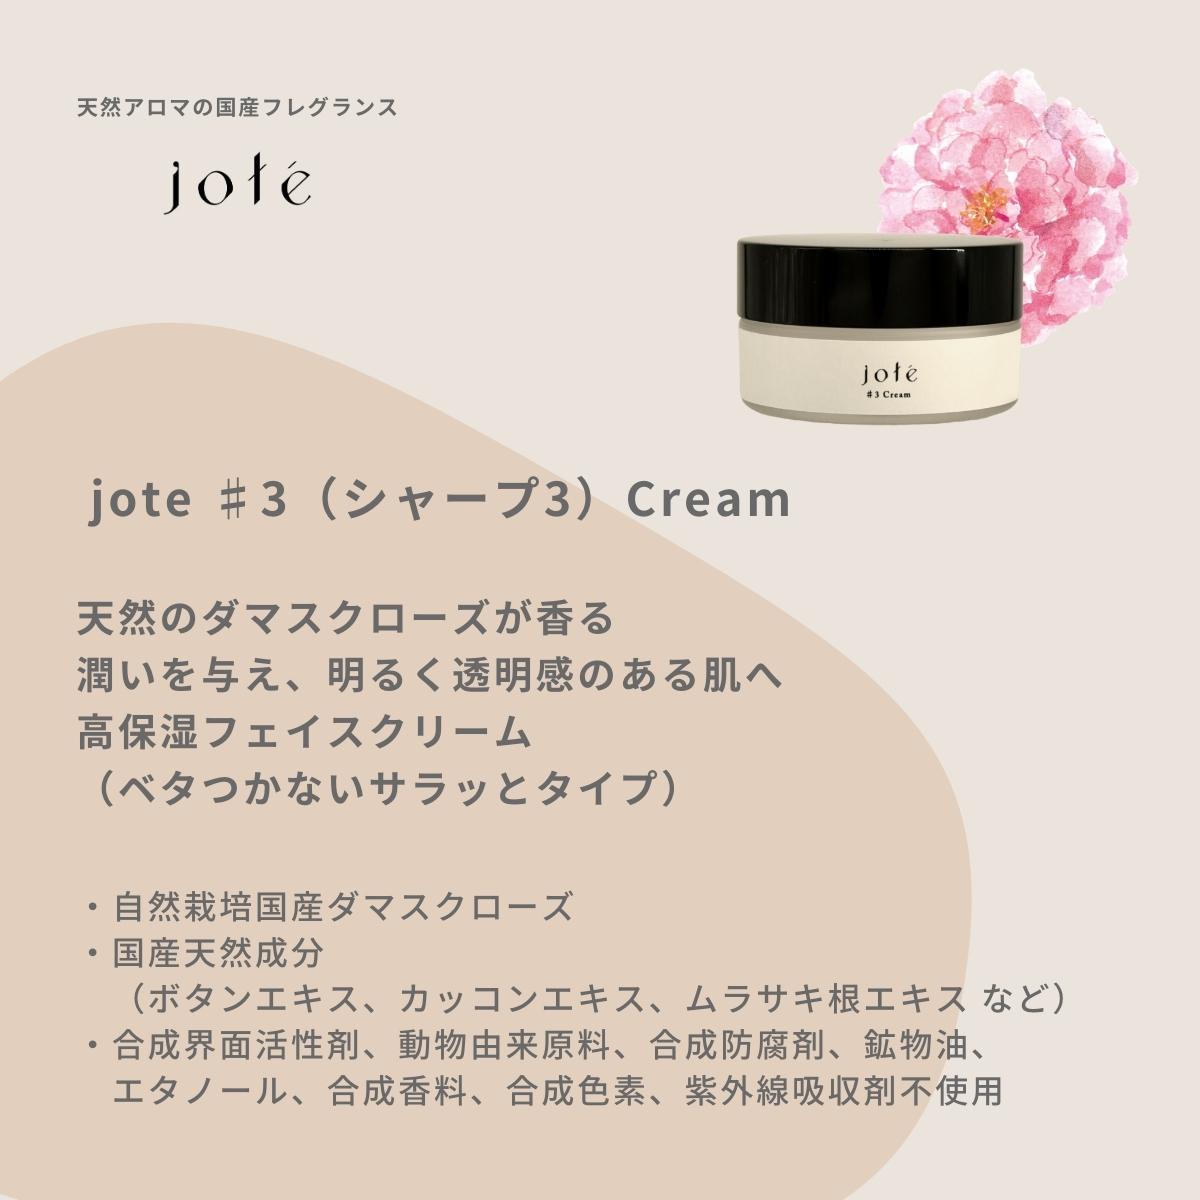 jote ♯3 （シャープ3）Cream 30g 《ダマスクローズの香り》高保湿フェイスクリーム